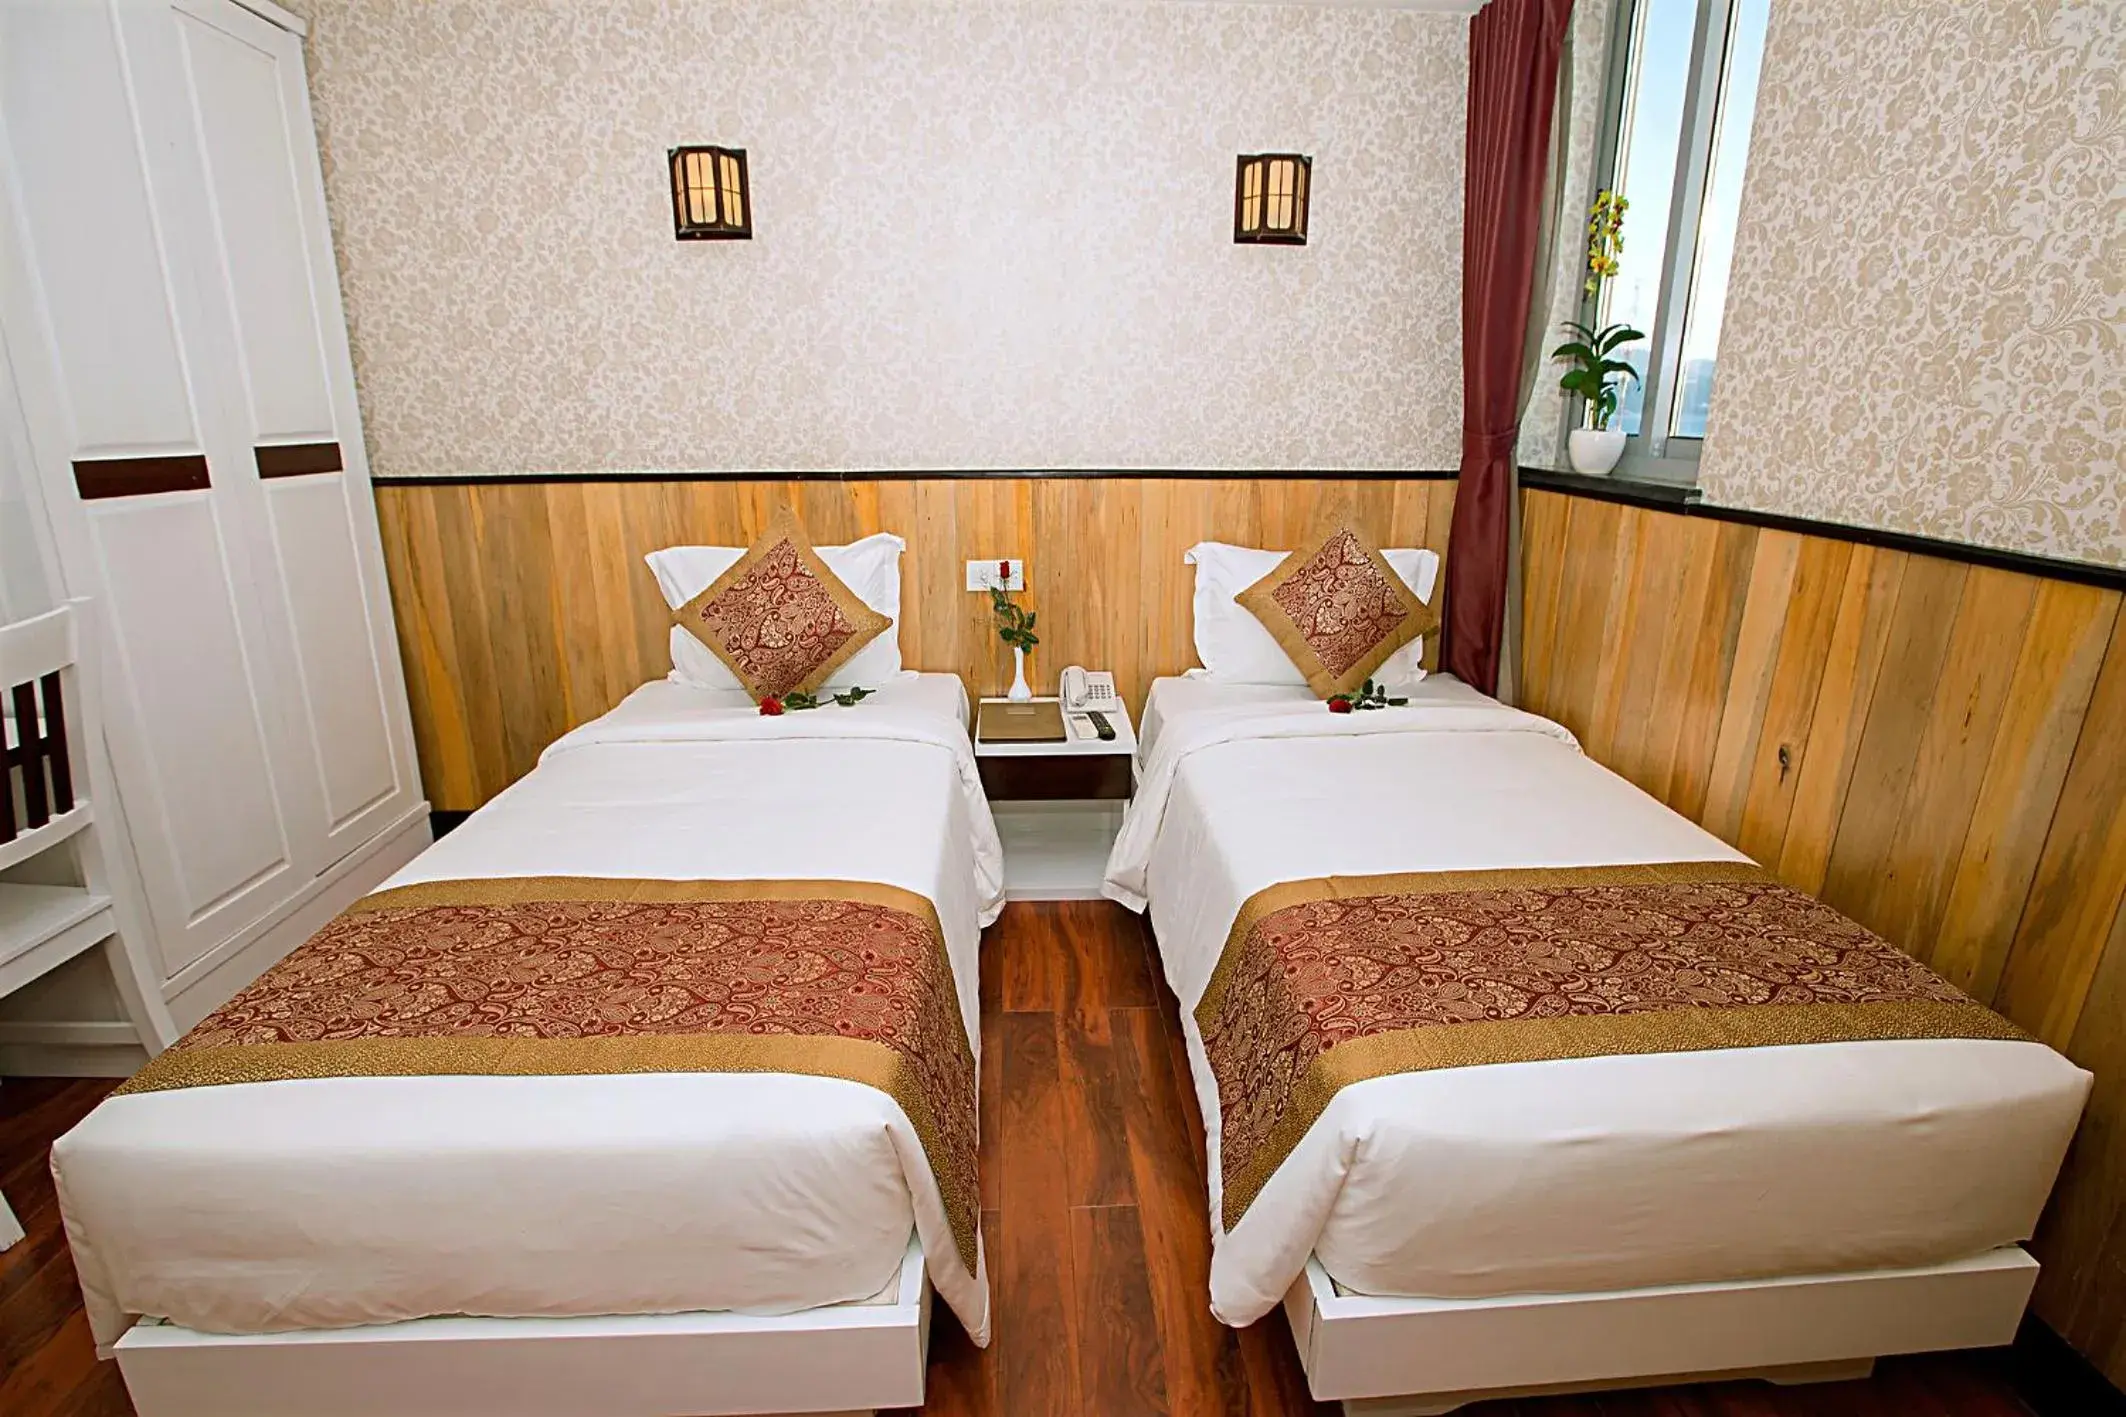 Bedroom, Bed in Golden Rain 2 Hotel